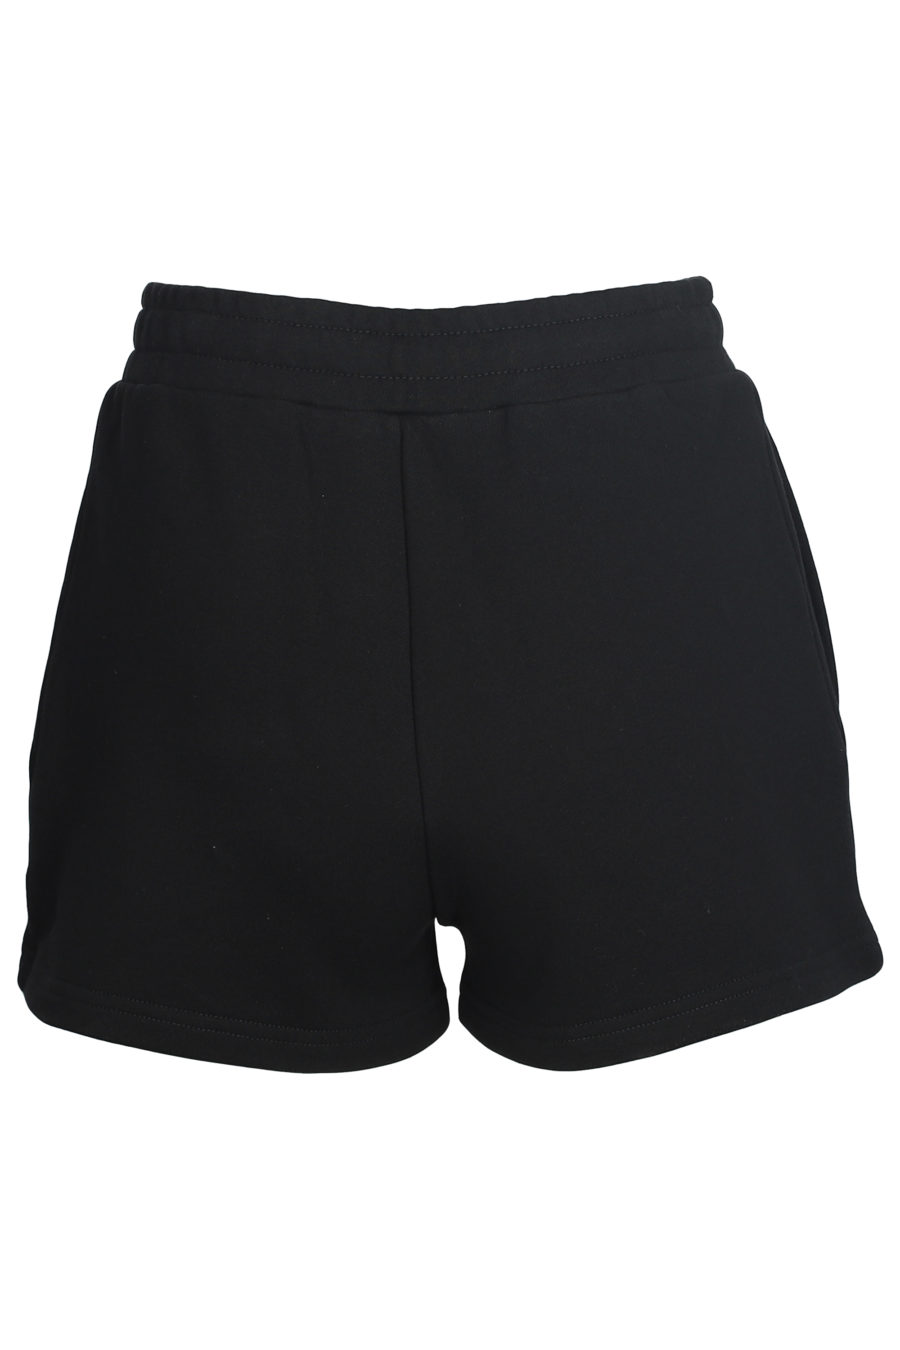 Black shorts with logo - IMG 5599